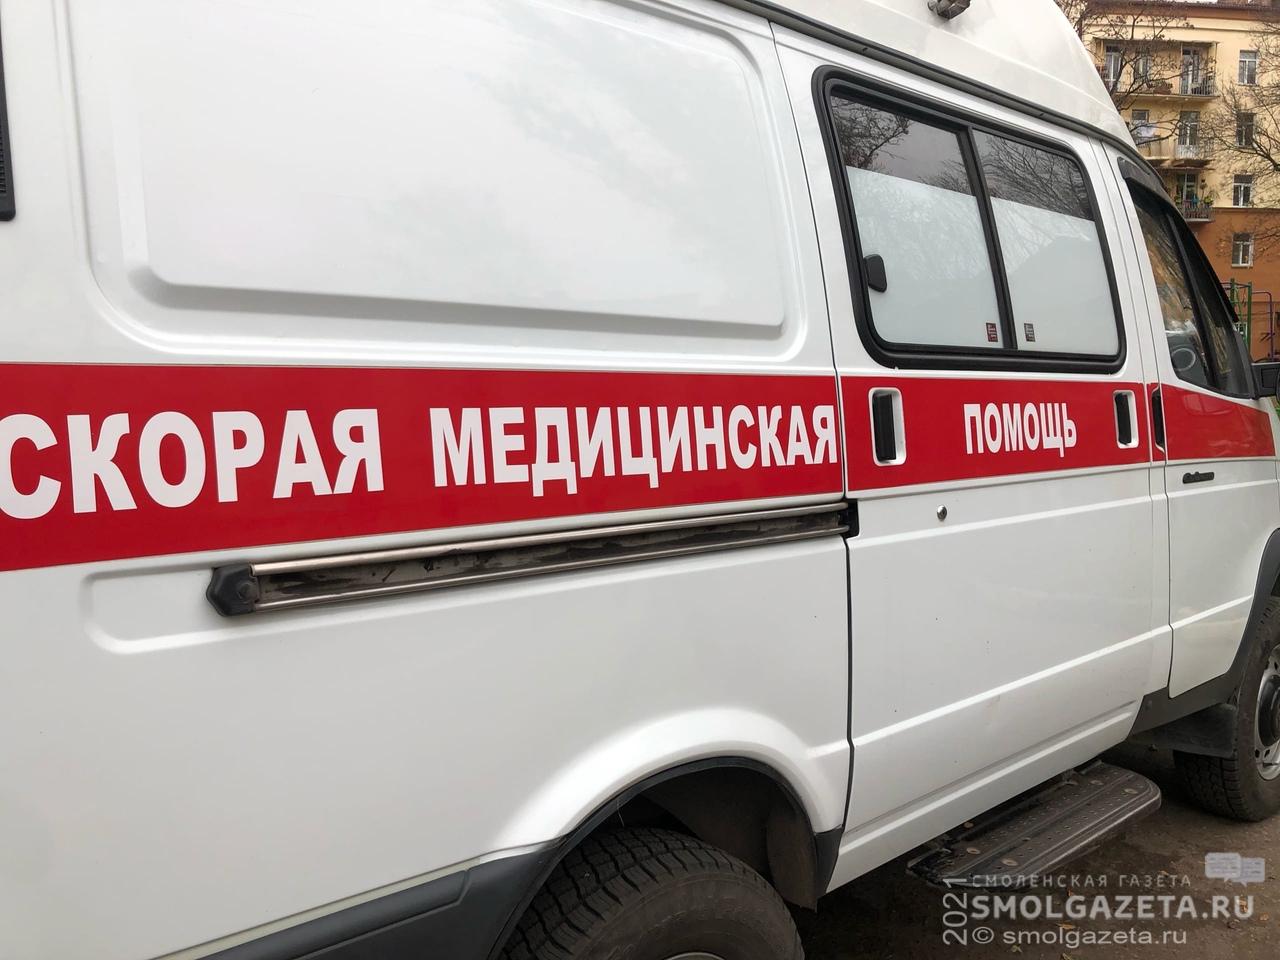 В поселке Холм-Жирковский при пожаре пострадала пожилая женщина